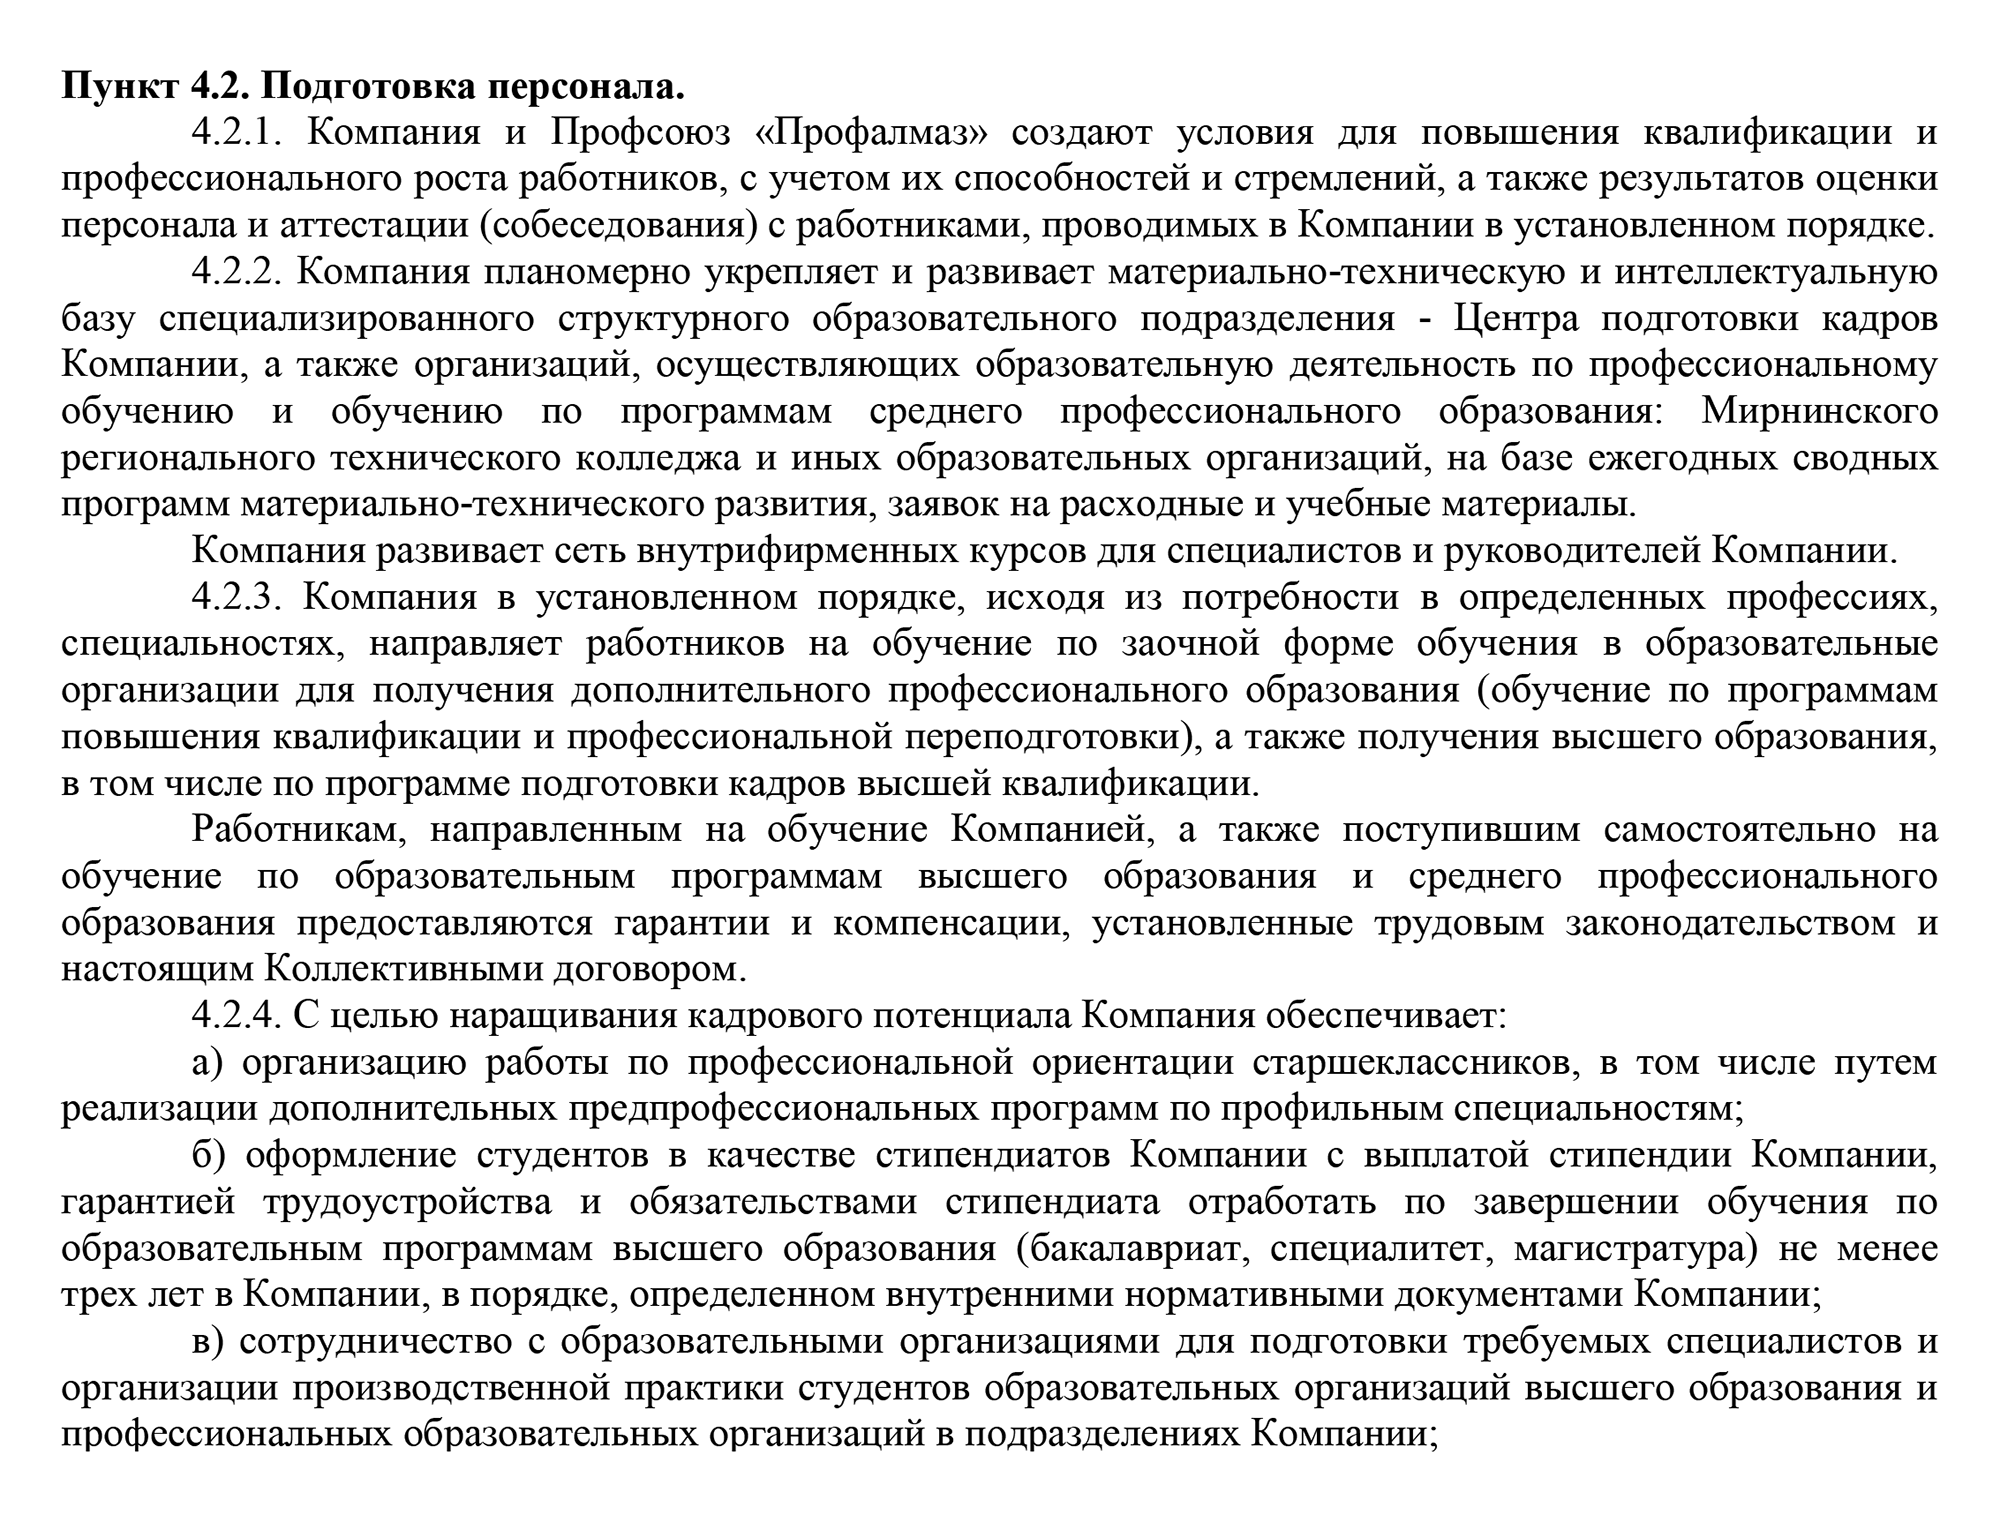 Вот, например, условие коллективного договора компании «Алроса» об обучении за счет работодателя. Источник: cpk‑alrosa.ru